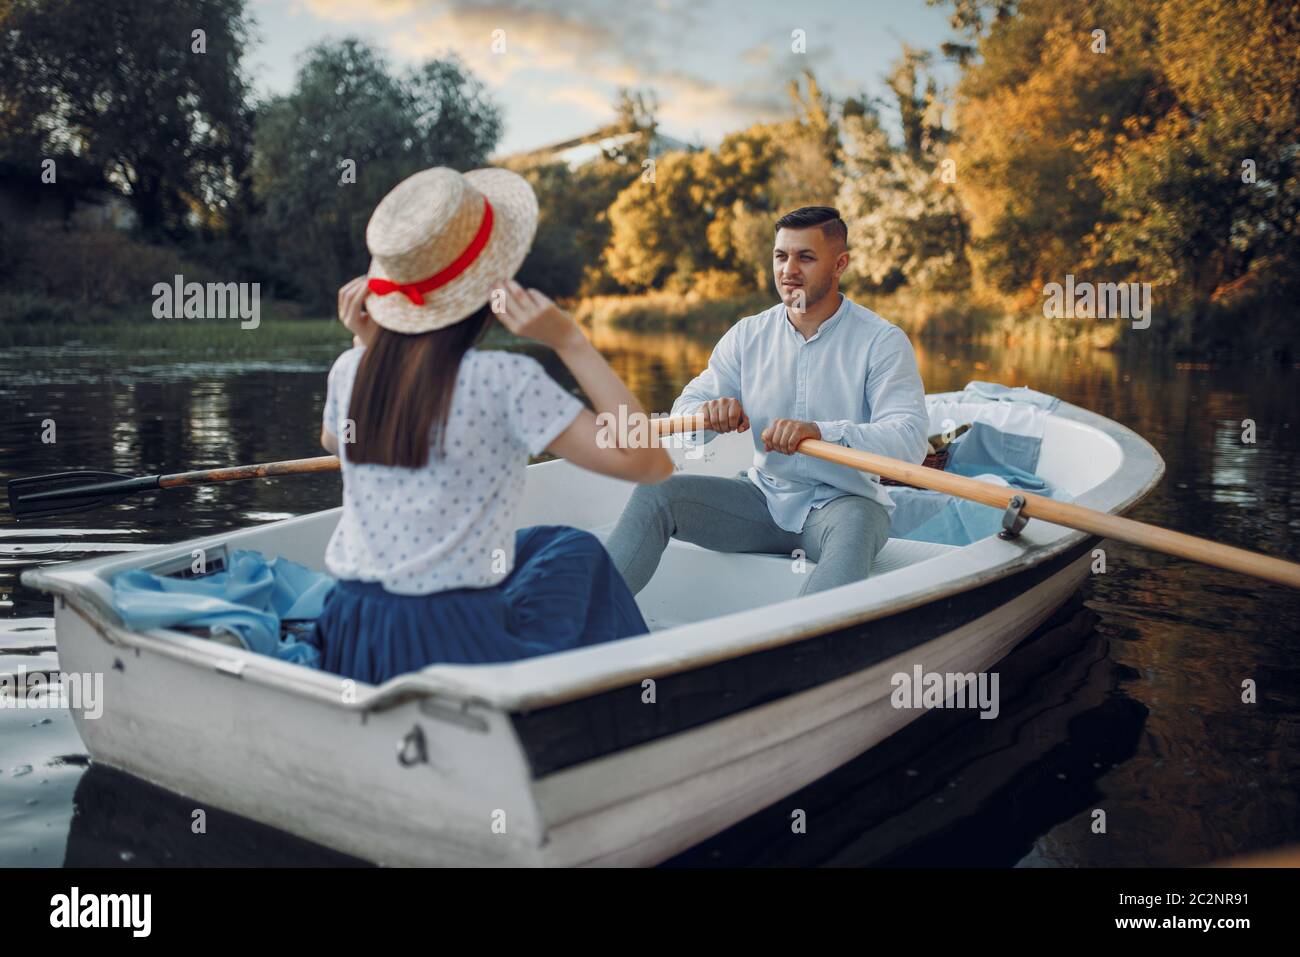 J'adore faire du bateau en couple sur le lac le jour de l'été. Données romantiques, promenade en bateau, homme et femme marchant le long de la rivière Banque D'Images